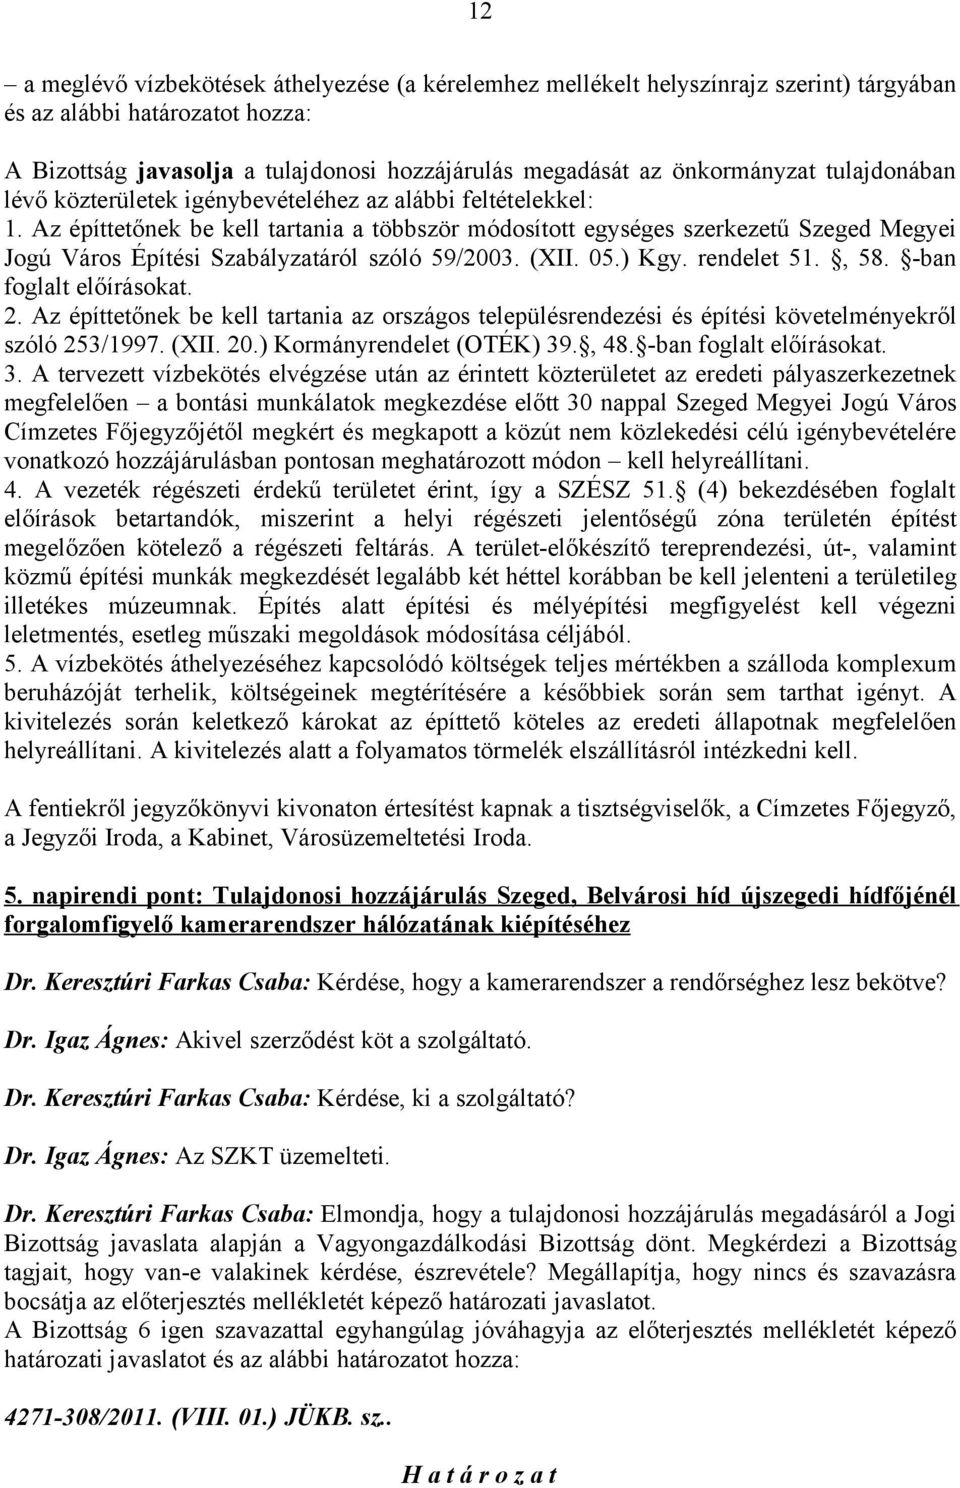 Az építtetőnek be kell tartania a többször módosított egységes szerkezetű Szeged Megyei Jogú Város Építési Szabályzatáról szóló 59/2003. (XII. 05.) Kgy. rendelet 51., 58. -ban foglalt előírásokat. 2.